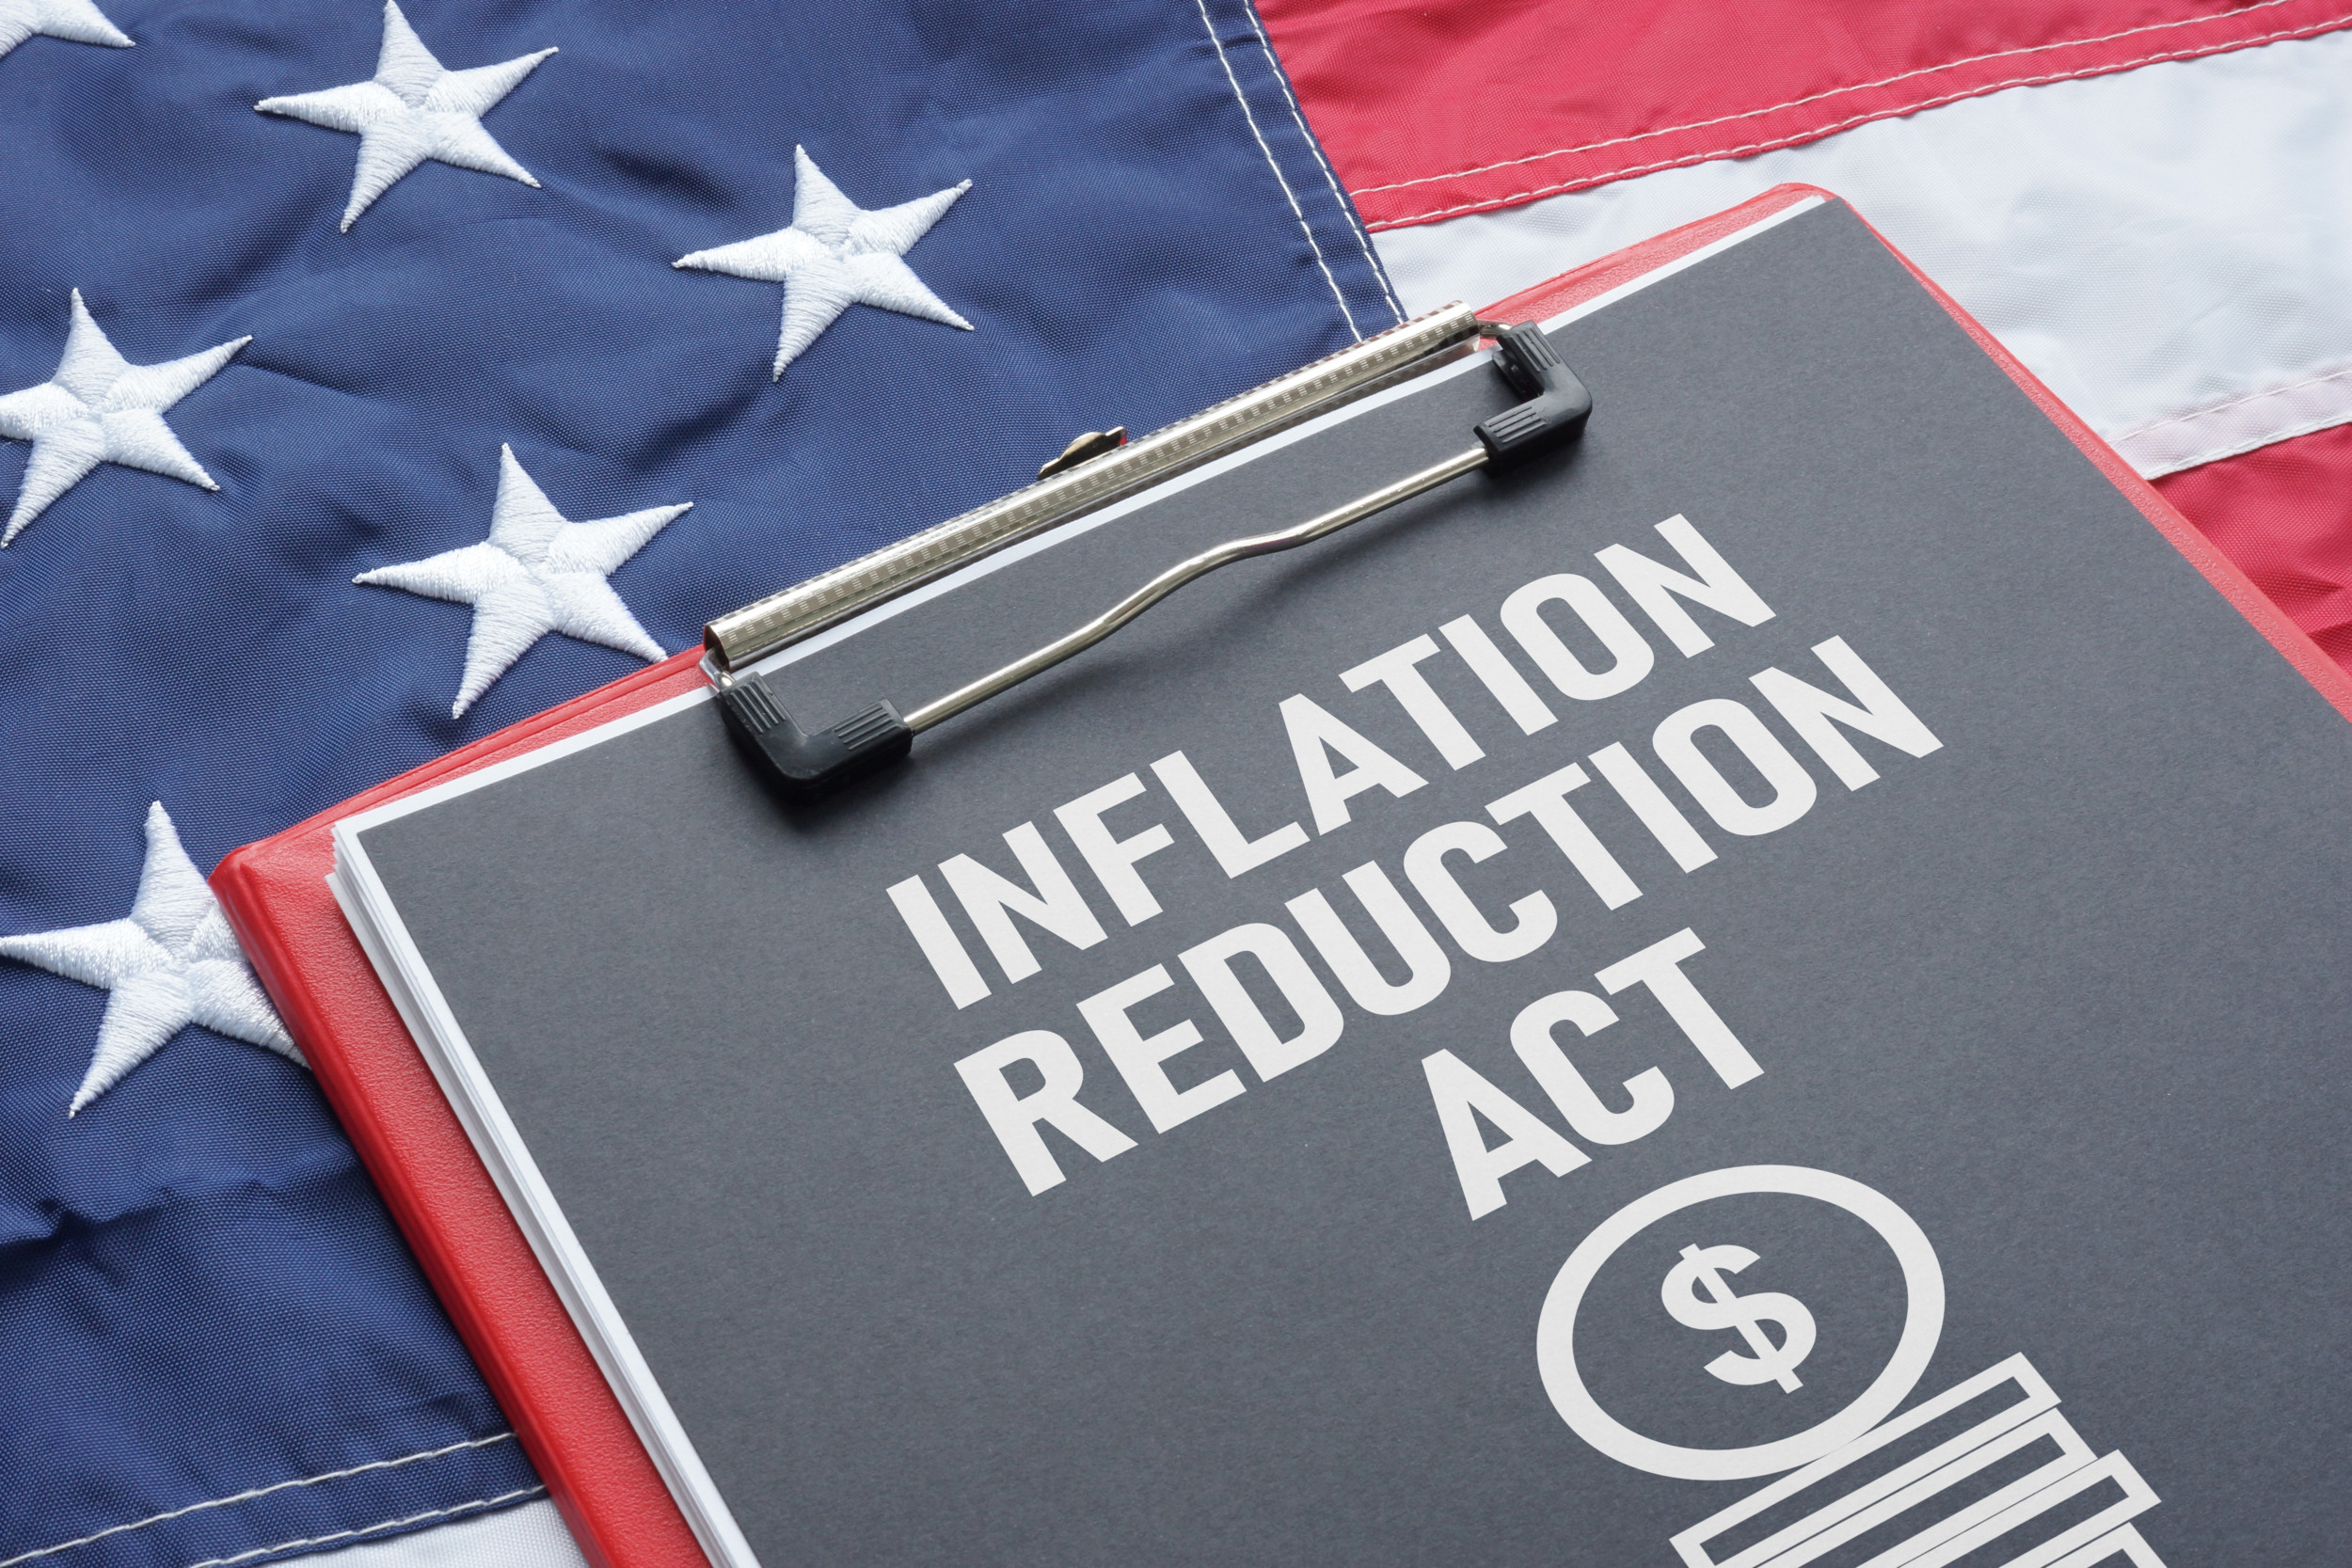 Hat der Inflation Reduction Act mit seinen neuen Steuergesetzen Einfluss auf die Kunststoffbranche? Die K-Zeitung hat Experten nach ihrer Einschätzung gefragt.